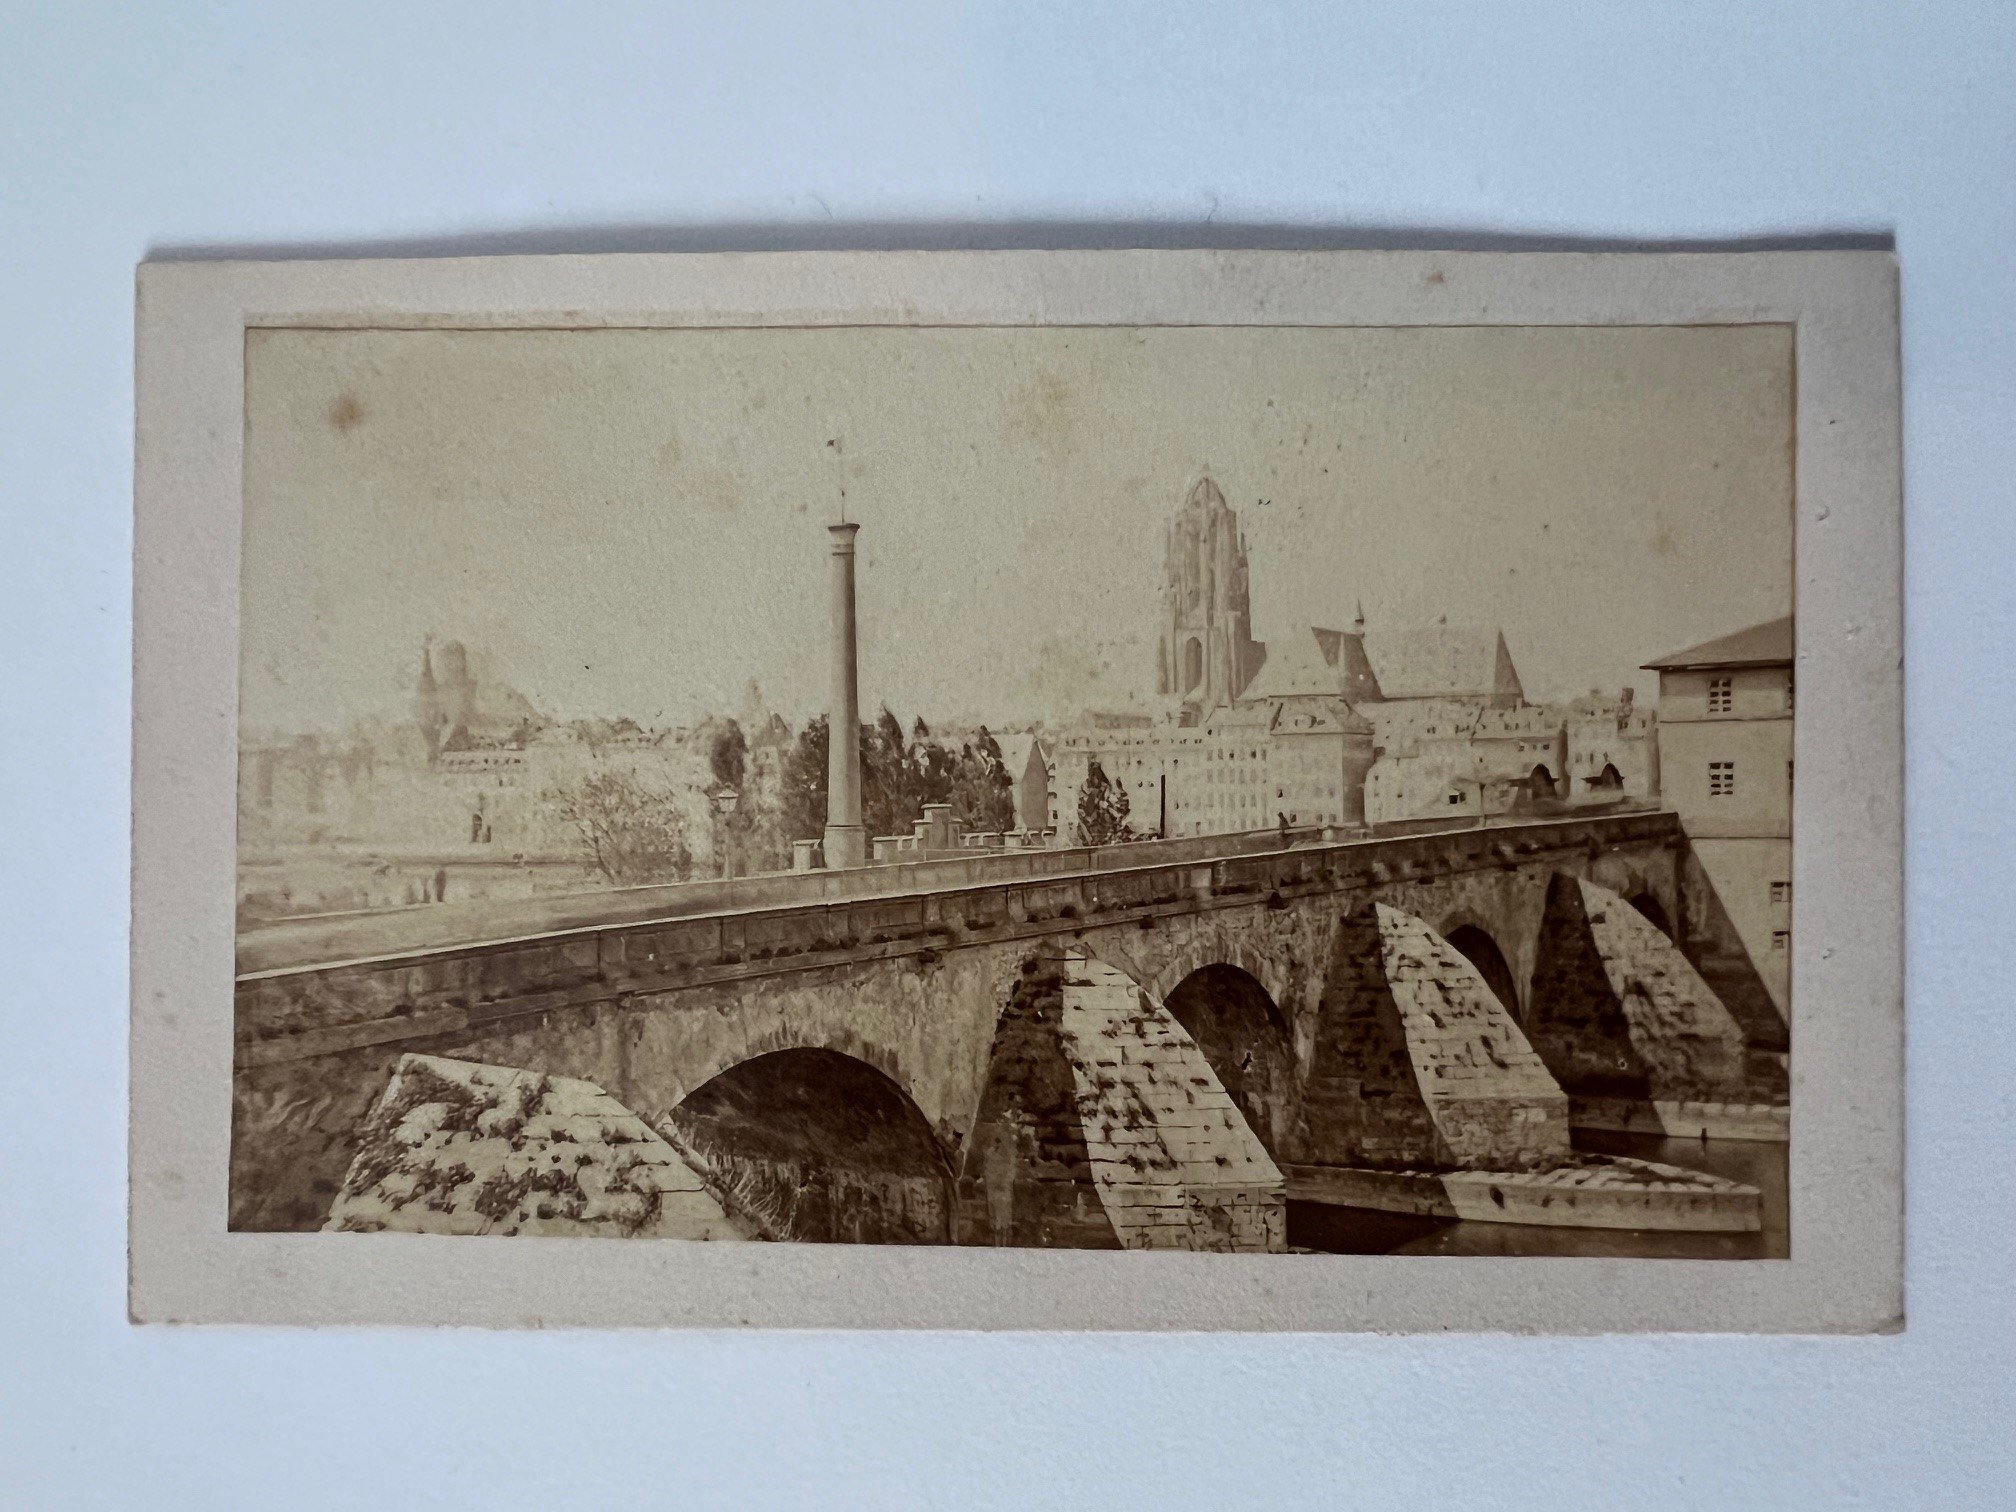 CdV, Unbekannter Fotograf, Frankfurt, Die alte Brücke, ca. 1865 (Taunus-Rhein-Main - Regionalgeschichtliche Sammlung Dr. Stefan Naas CC BY-NC-SA)